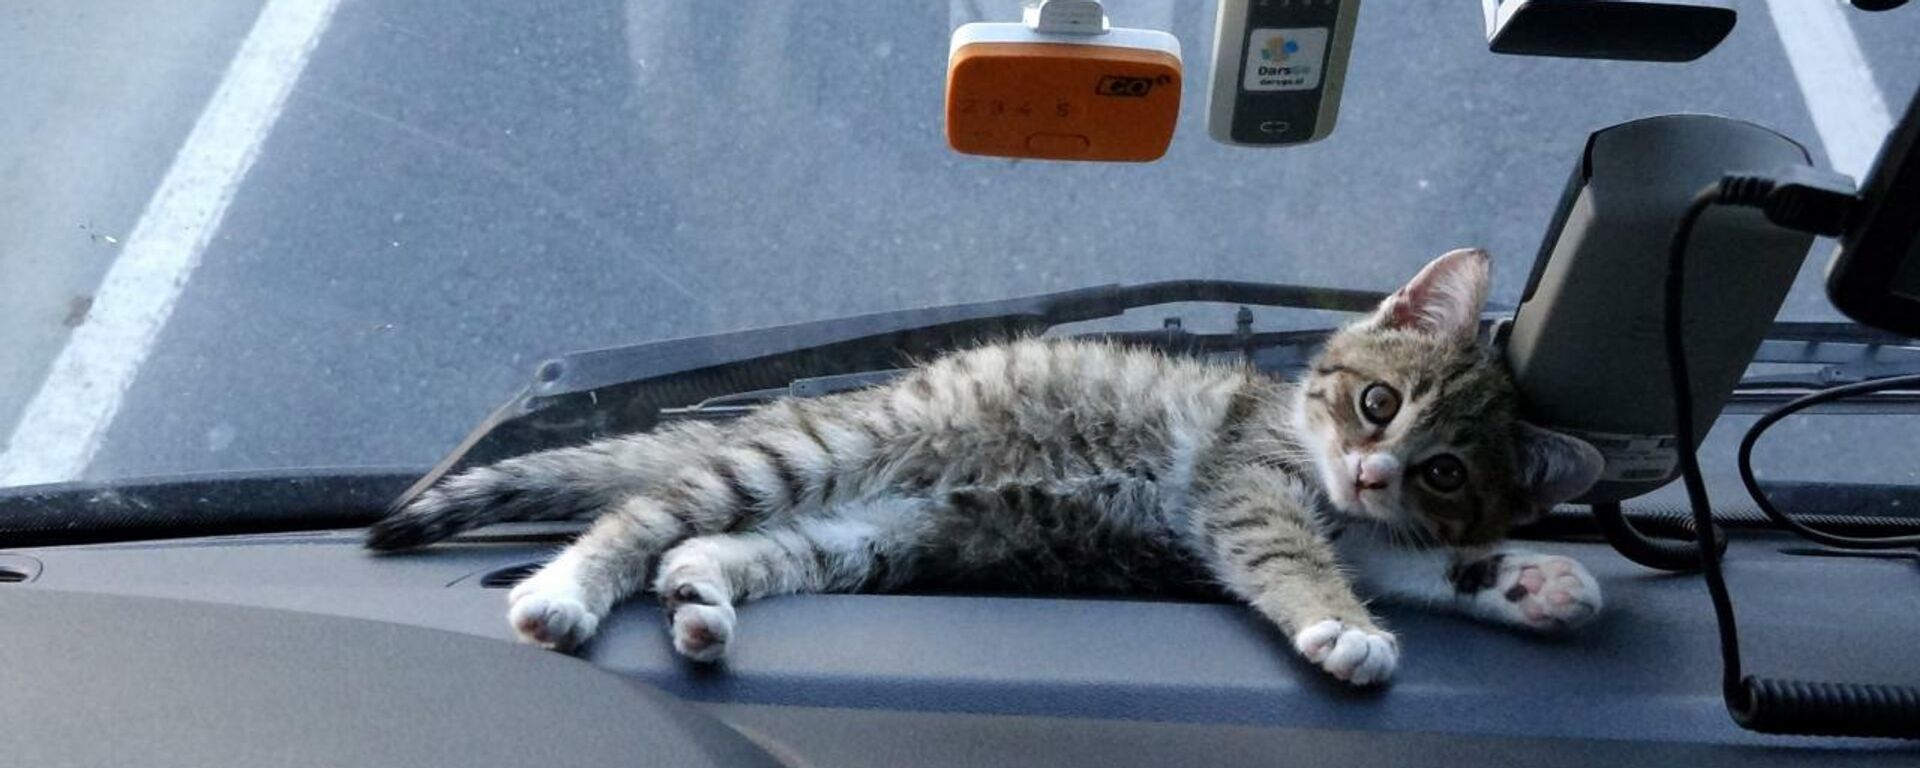 Yaralı bulduğu yavru kedi, TIR şoförünün yol arkadaşı oldu - Sputnik Türkiye, 1920, 14.12.2021